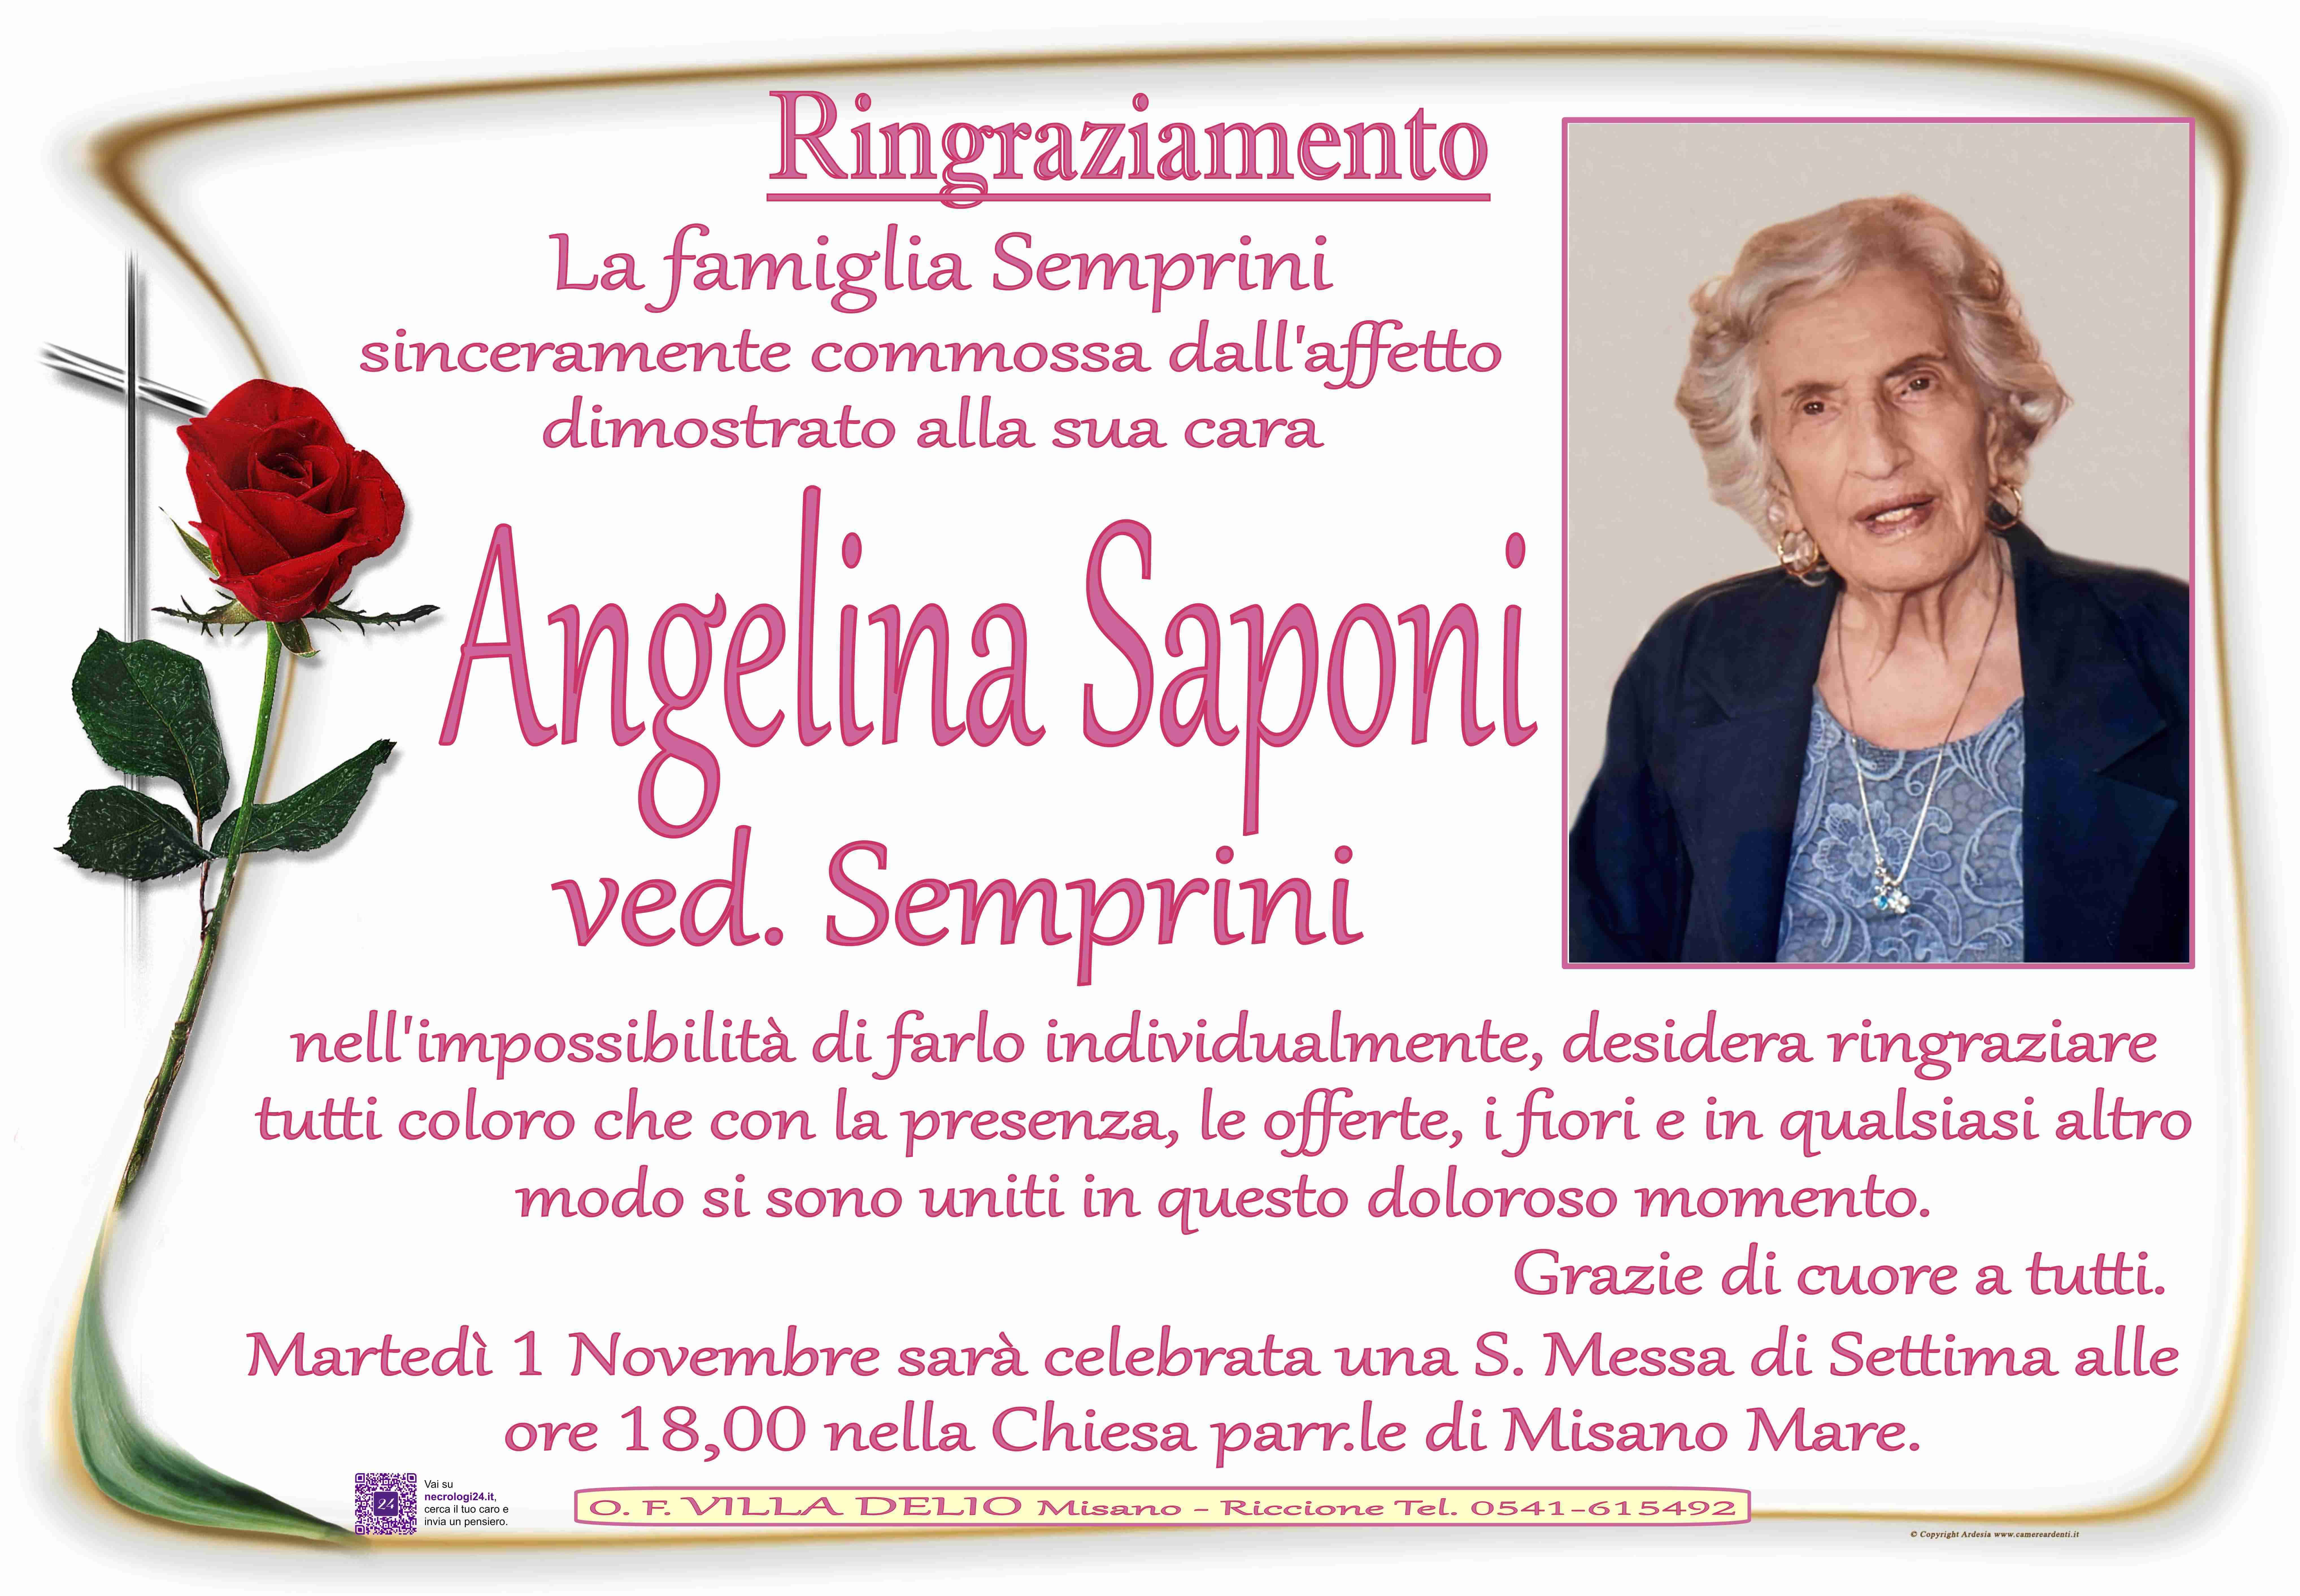 Angelina Saponi